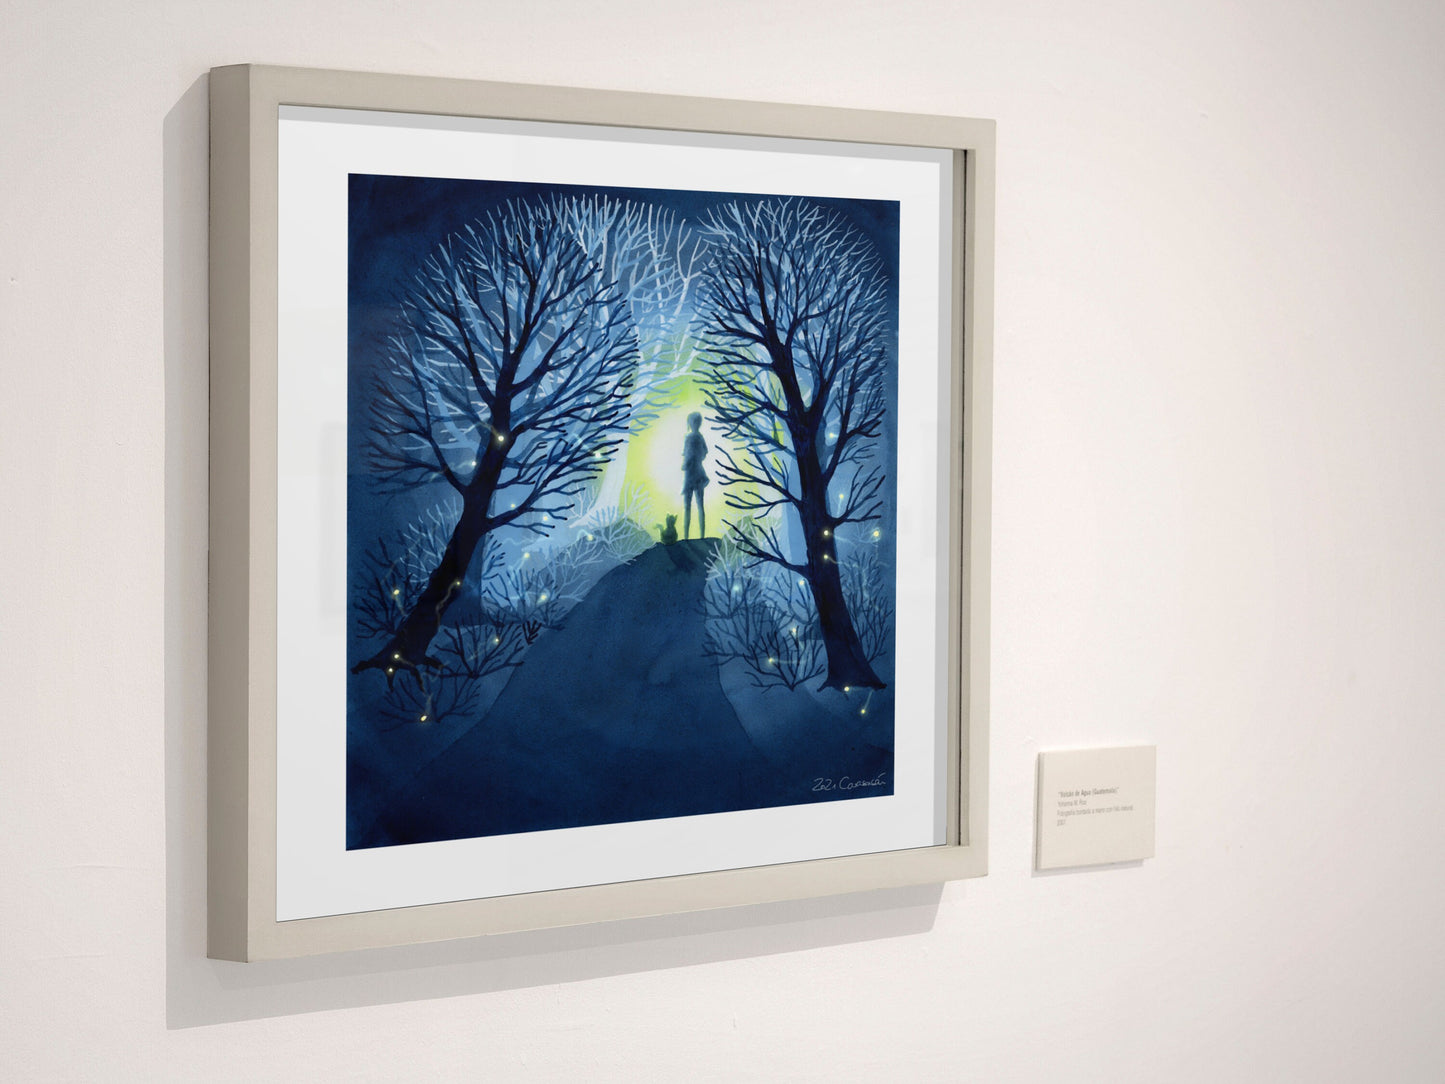 Aquarell 'Glühwürmchen' 30x30cm - Kunstdruck - Nachts im magischen Wald